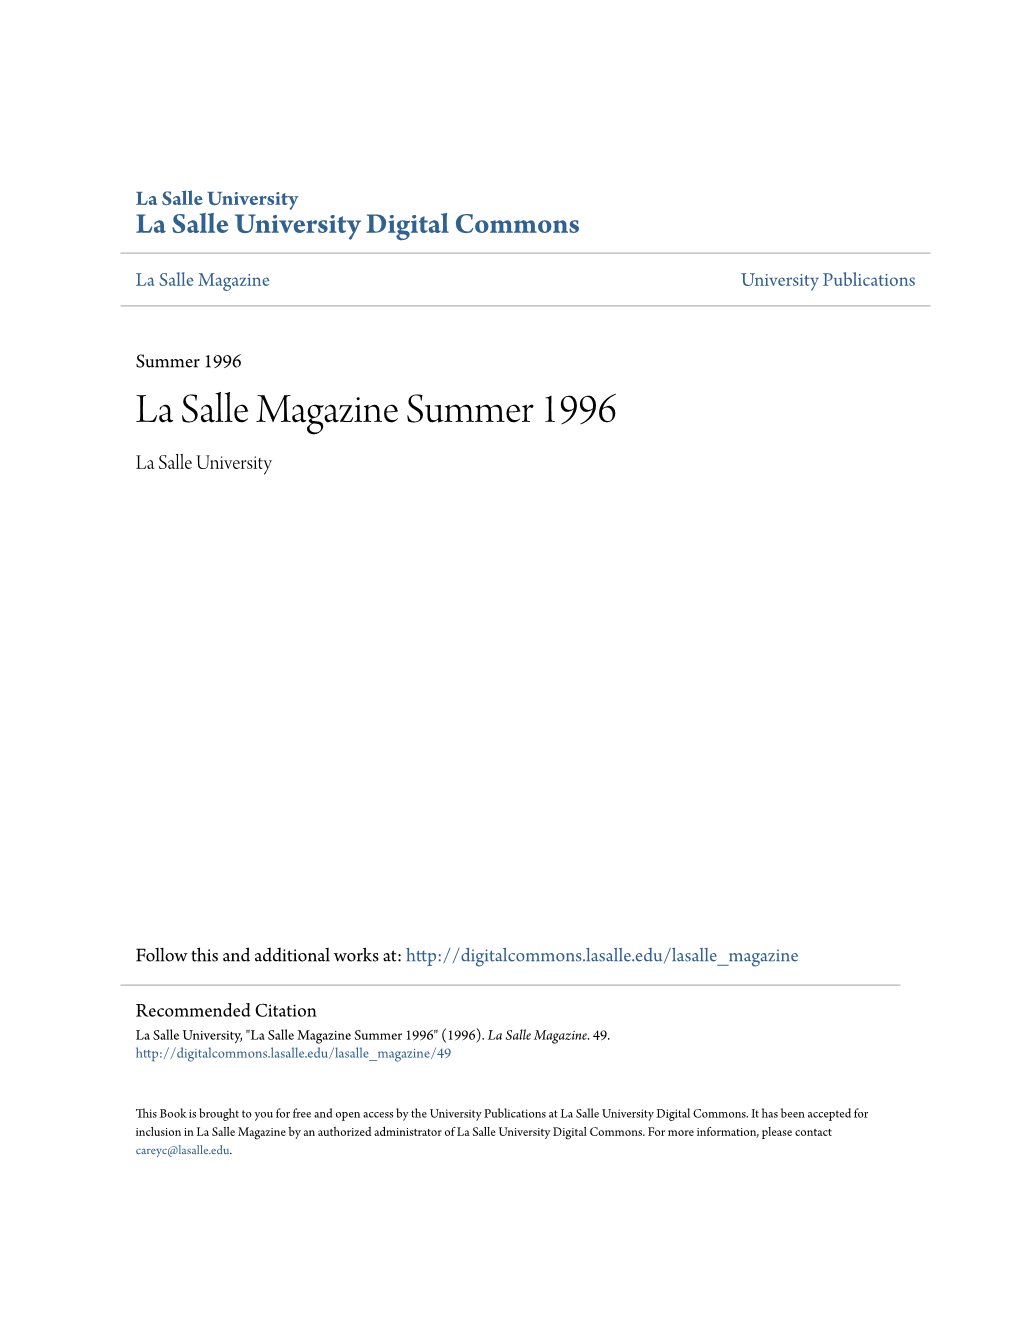 La Salle Magazine Summer 1996 La Salle University